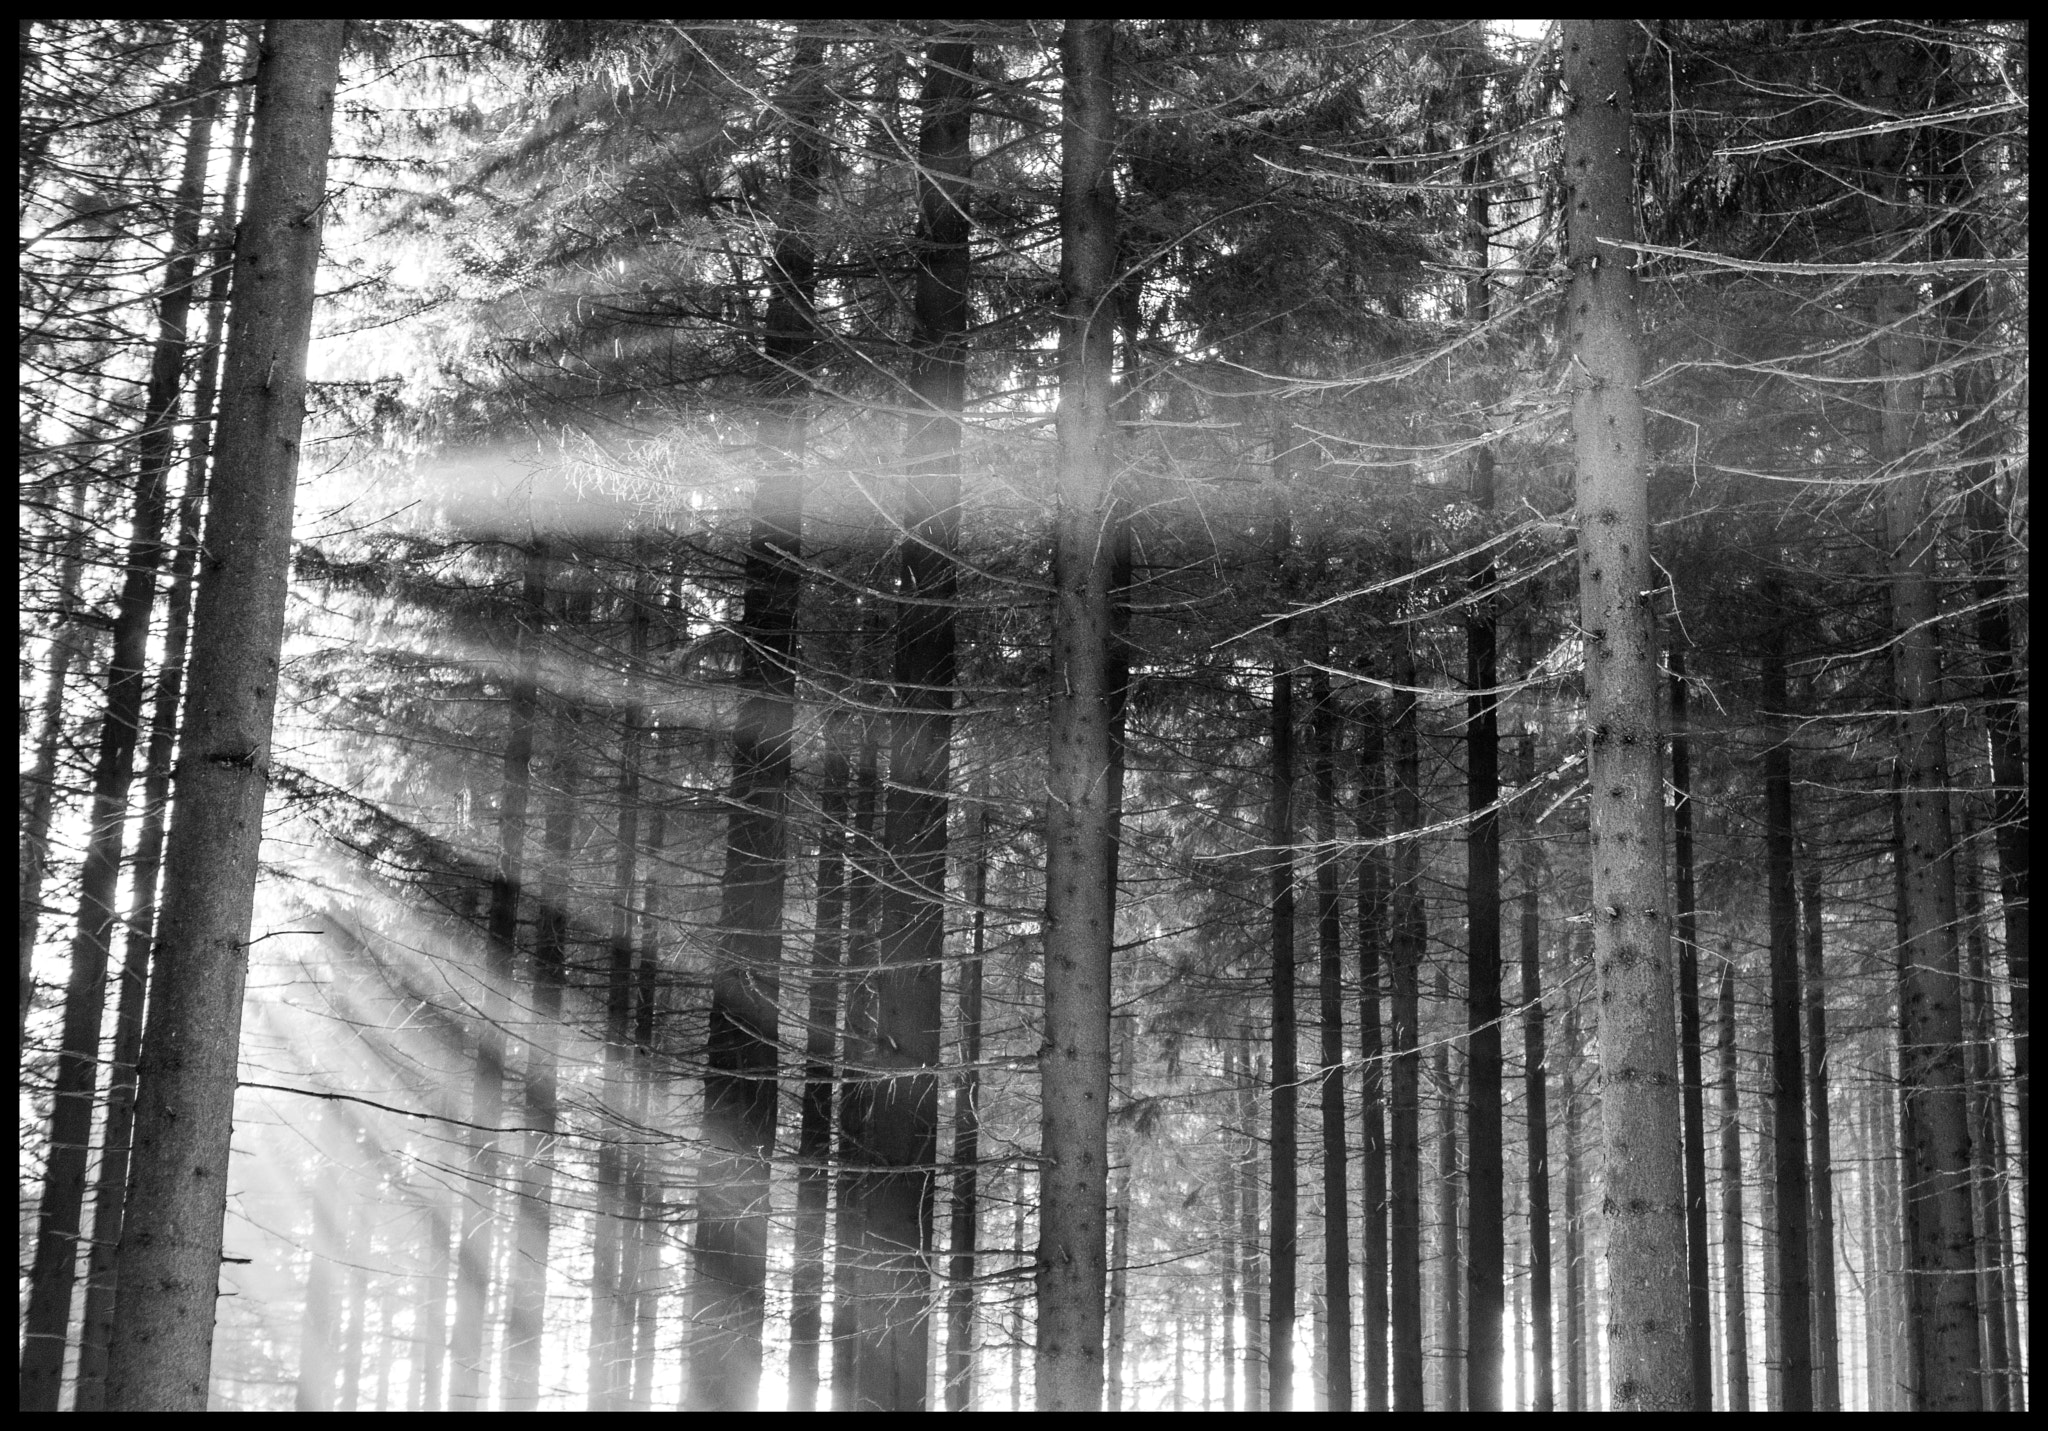 AF-S Zoom-Nikkor 24-85mm f/3.5-4.5G IF-ED sample photo. Forest photography